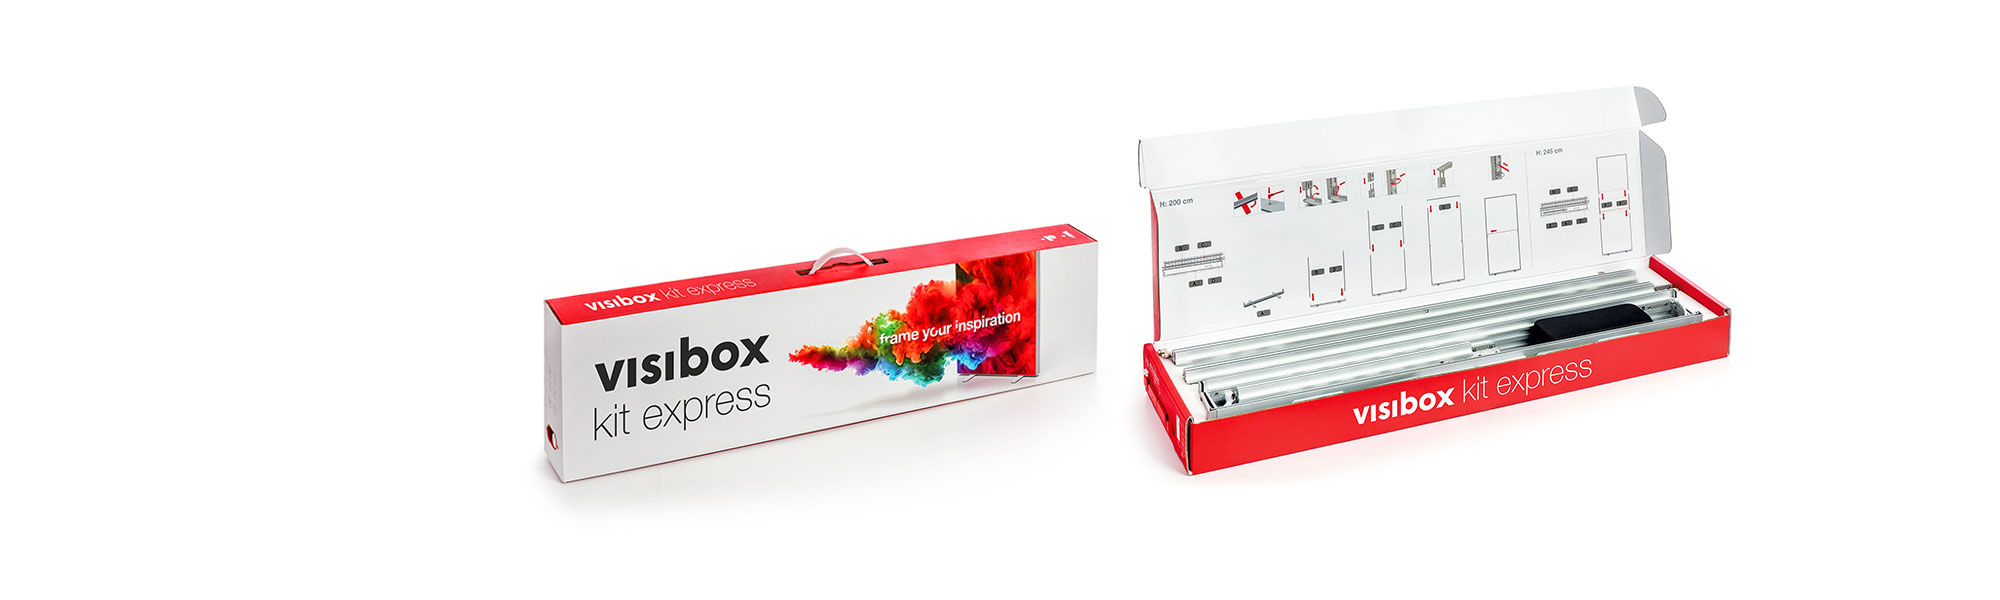 visibox kit express